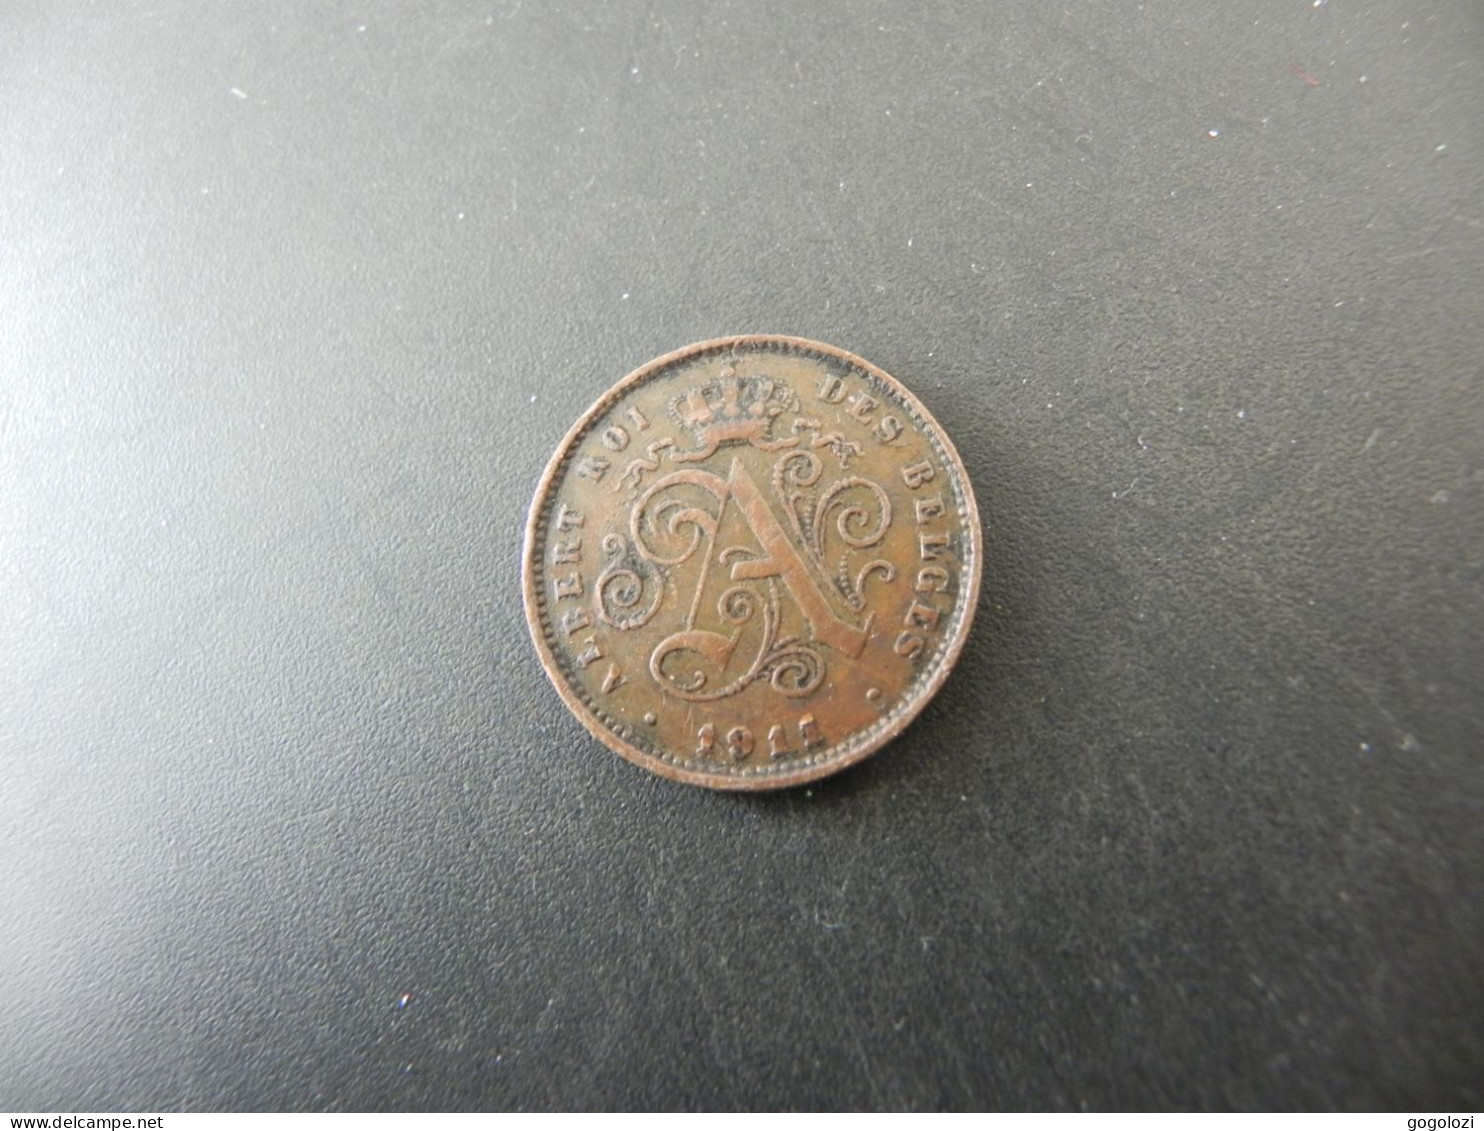 Belgique 2 Centimes 1911 - 2 Centimes